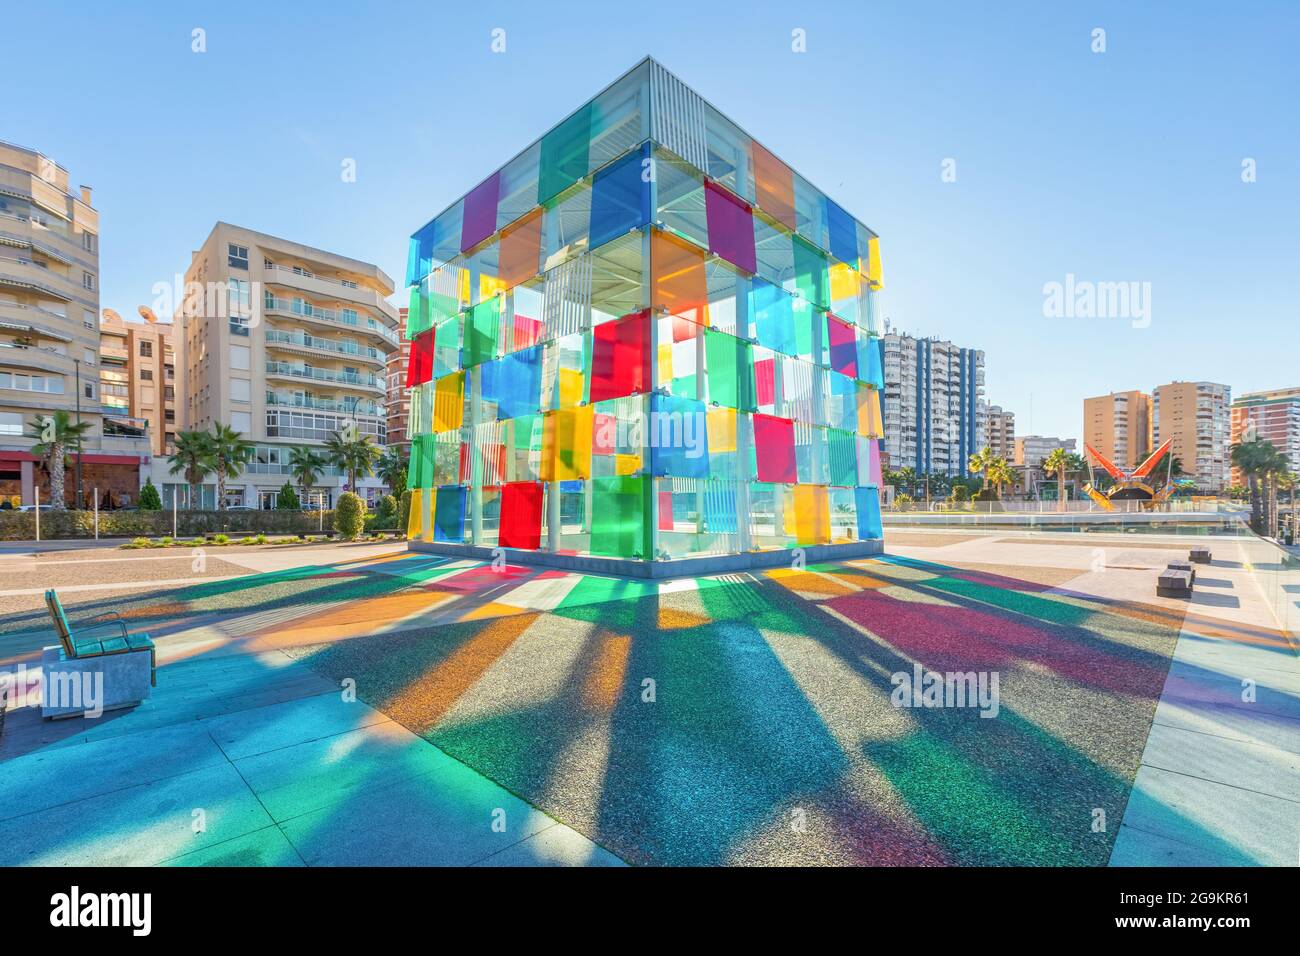 Malaga, Espagne - décembre 15 2016 : cube en verre coloré qui est l'entrée du Centre Pompidou, situé dans le quartier portuaire rénové de Malaga Banque D'Images